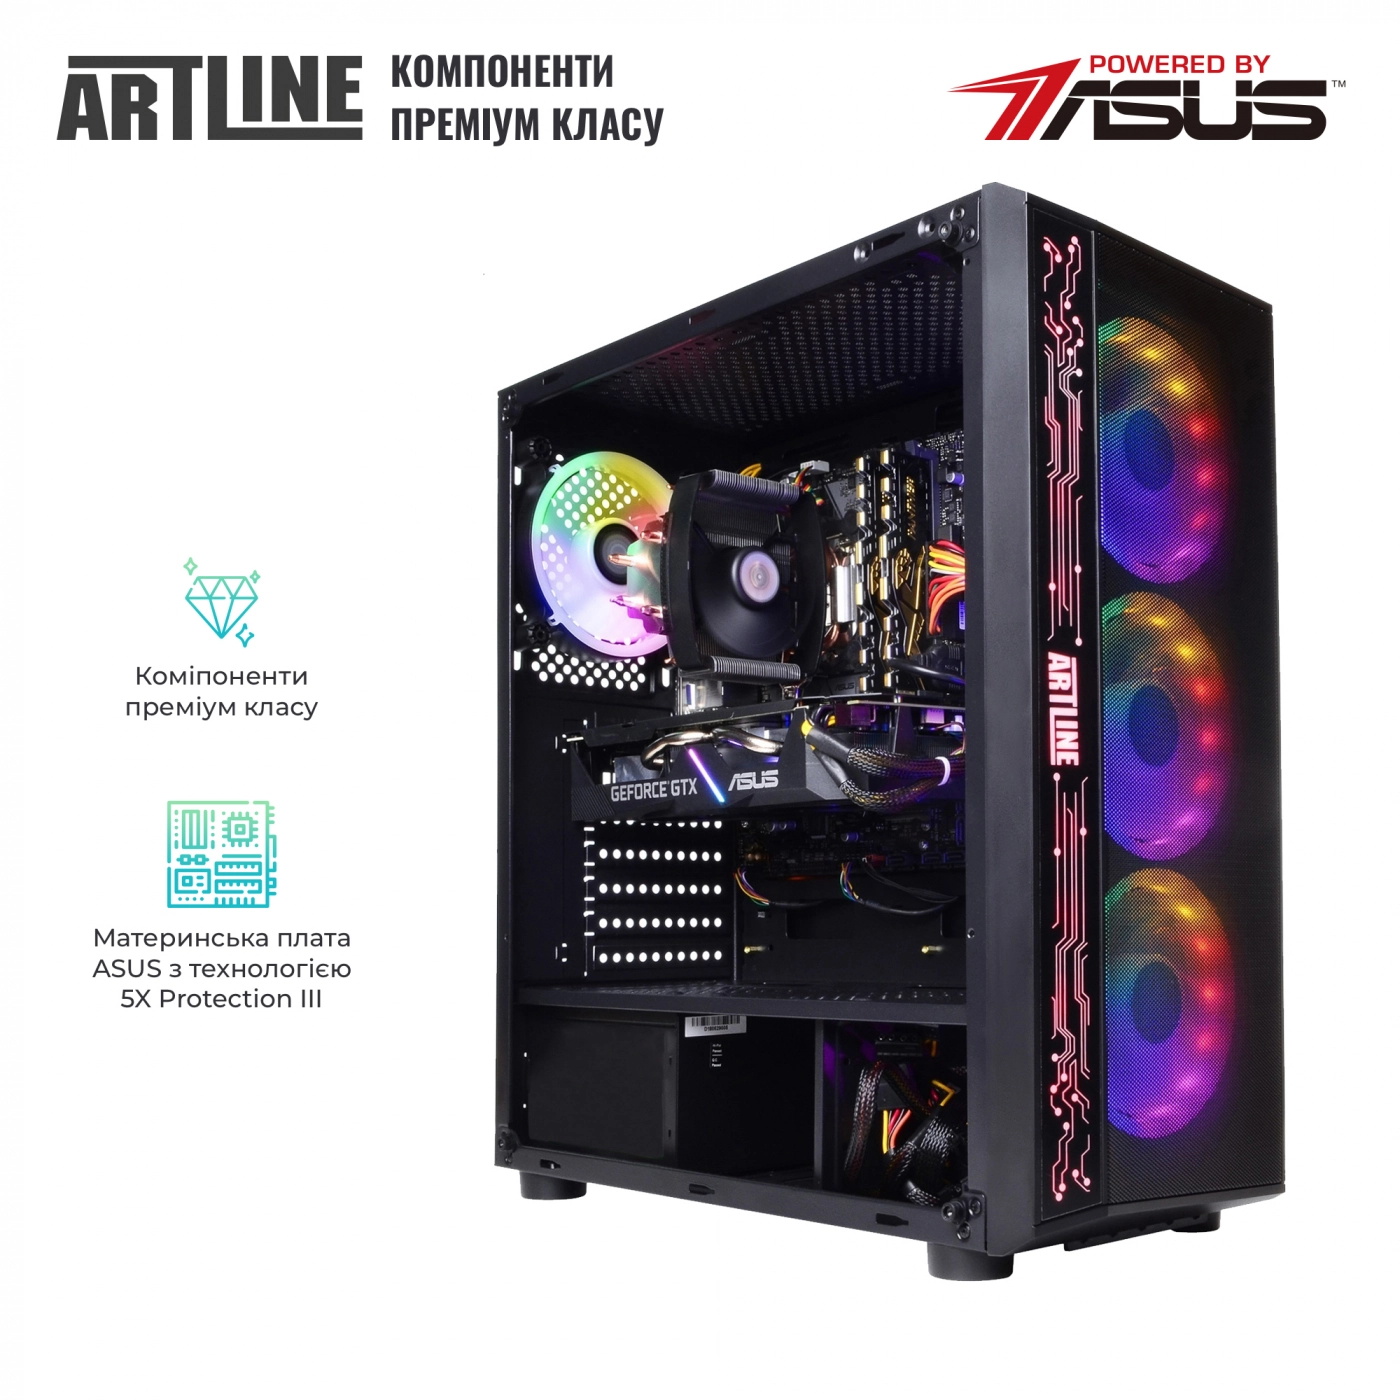 Купить Компьютер ARTLINE Gaming X74v16 - фото 2